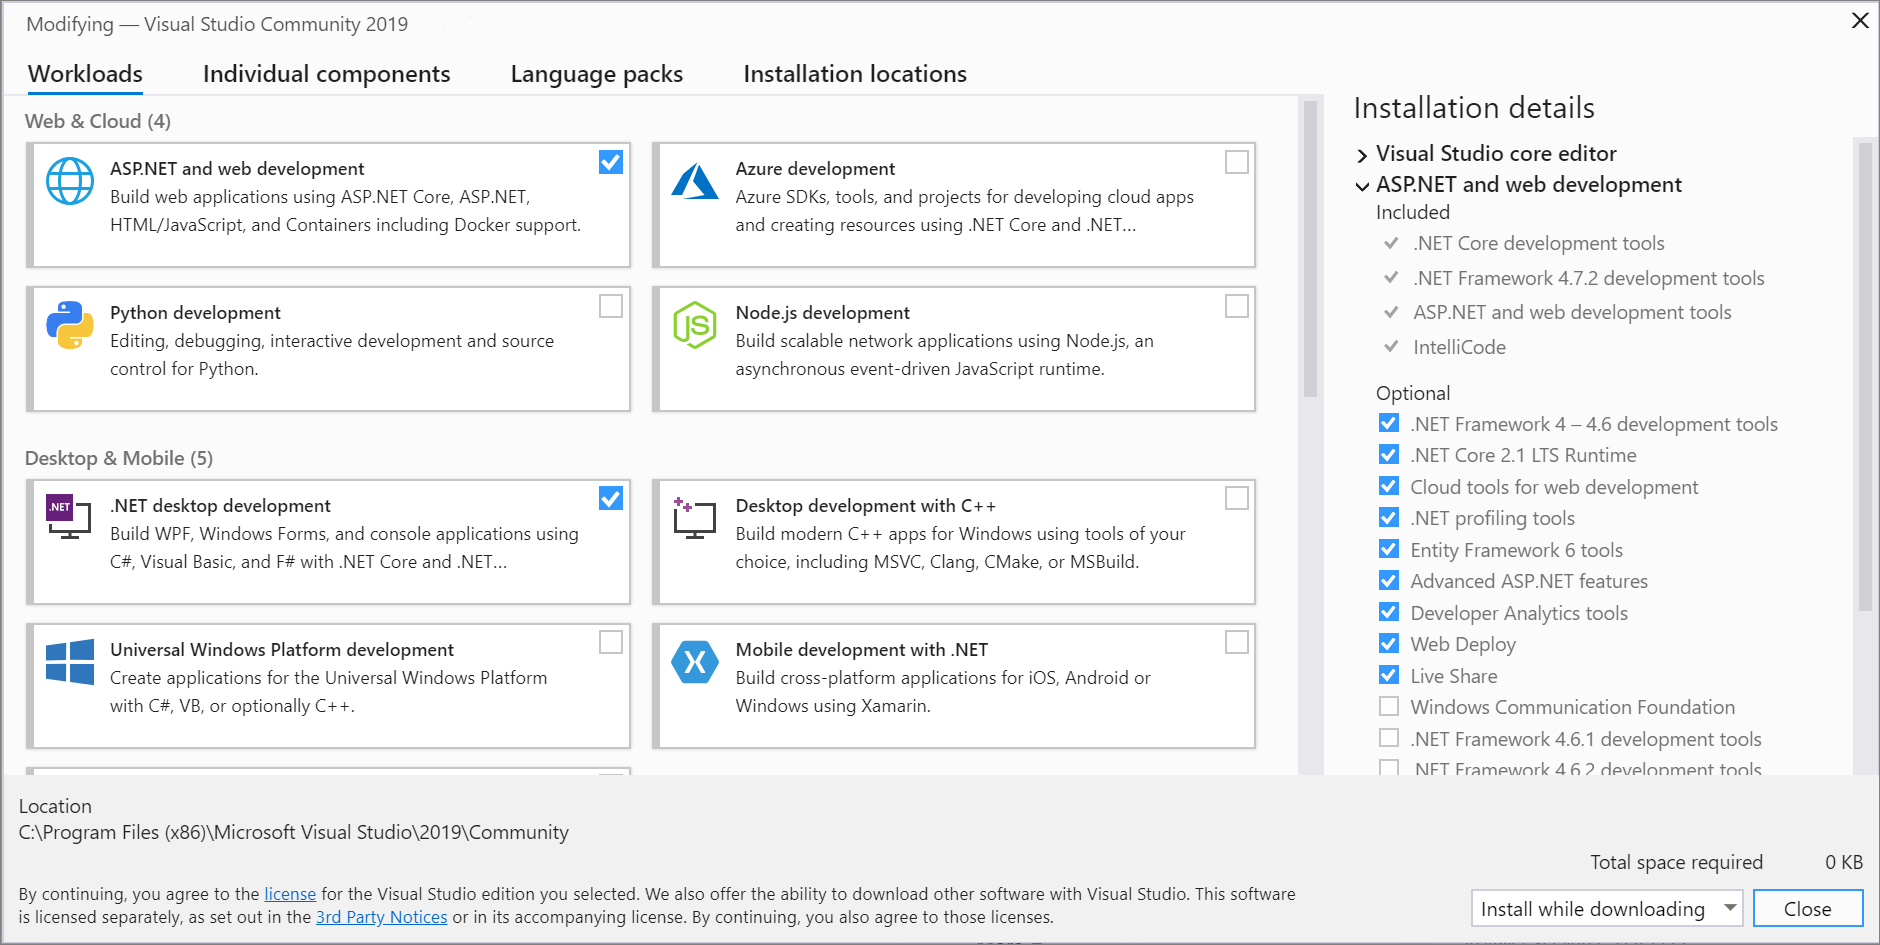 Captura de pantalla en la que se muestra la pestaña Cargas de trabajo del Instalador de Visual Studio.